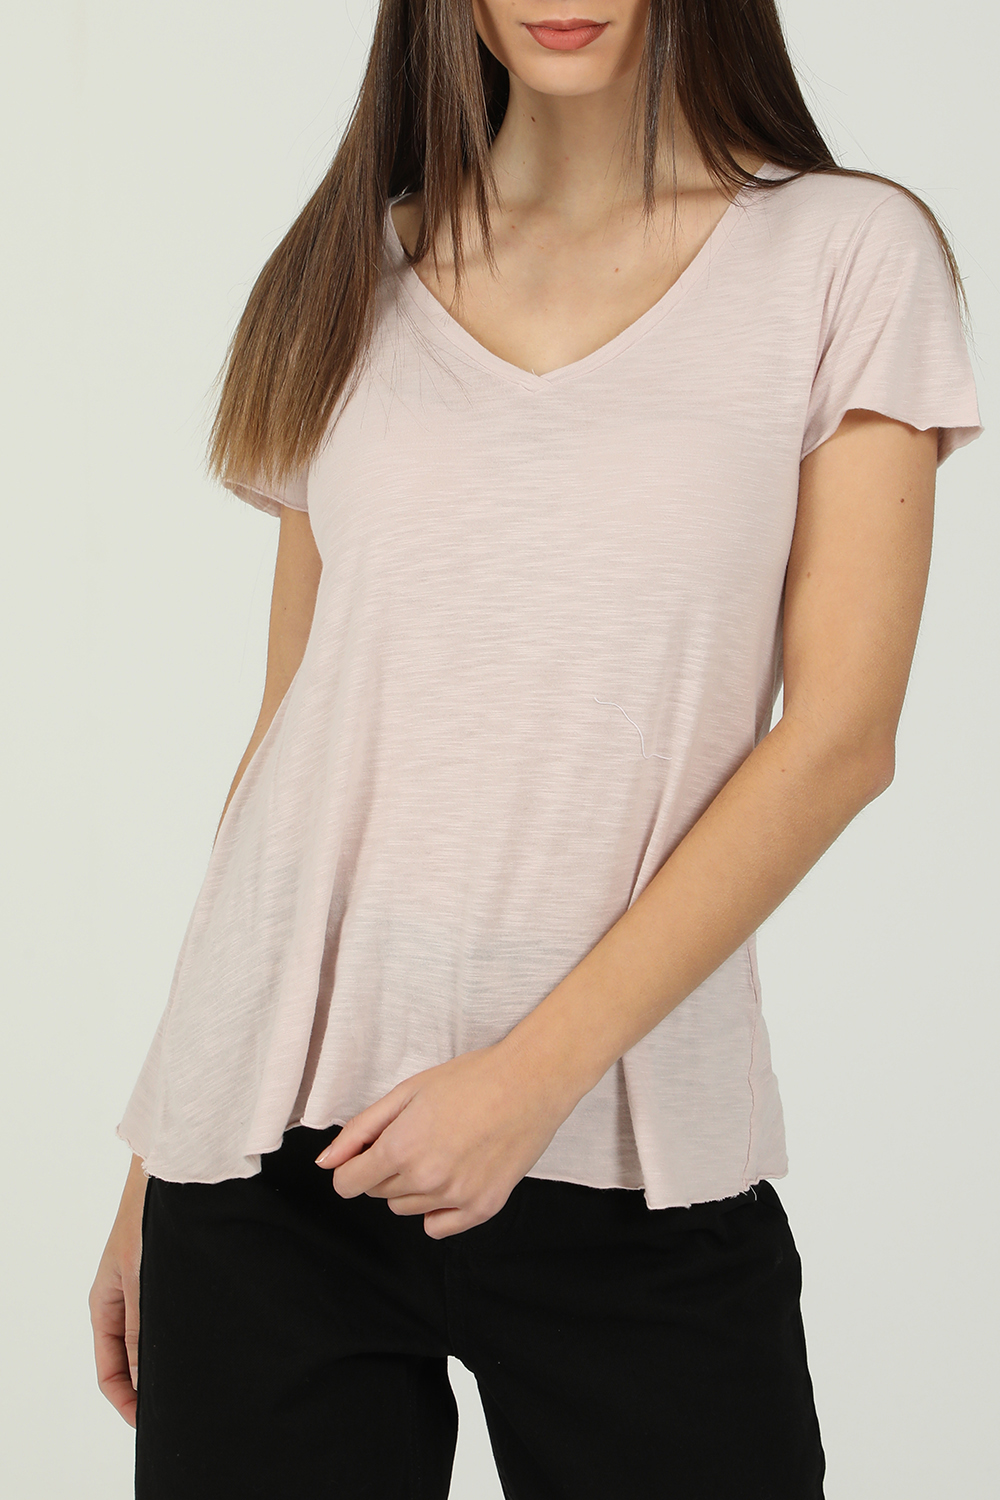 Γυναικεία/Ρούχα/Μπλούζες/Κοντομάνικες AMERICAN VINTAGE - Γυναικείο t-shirt AMERICAN VINTAGΕ ροζ